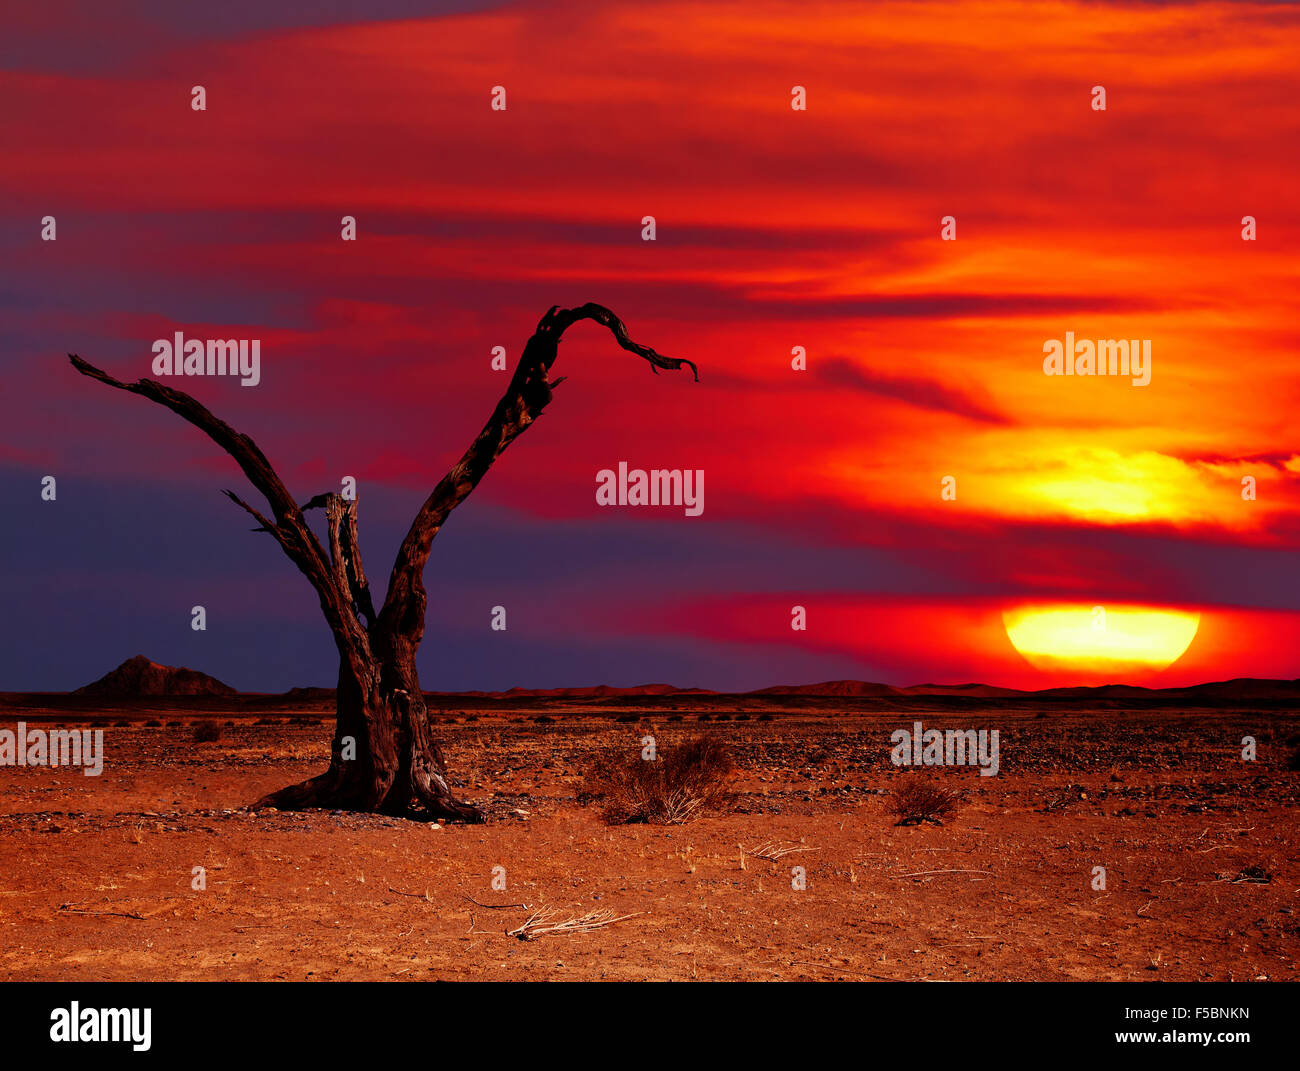 Il paesaggio del deserto con albero morto al tramonto Foto Stock